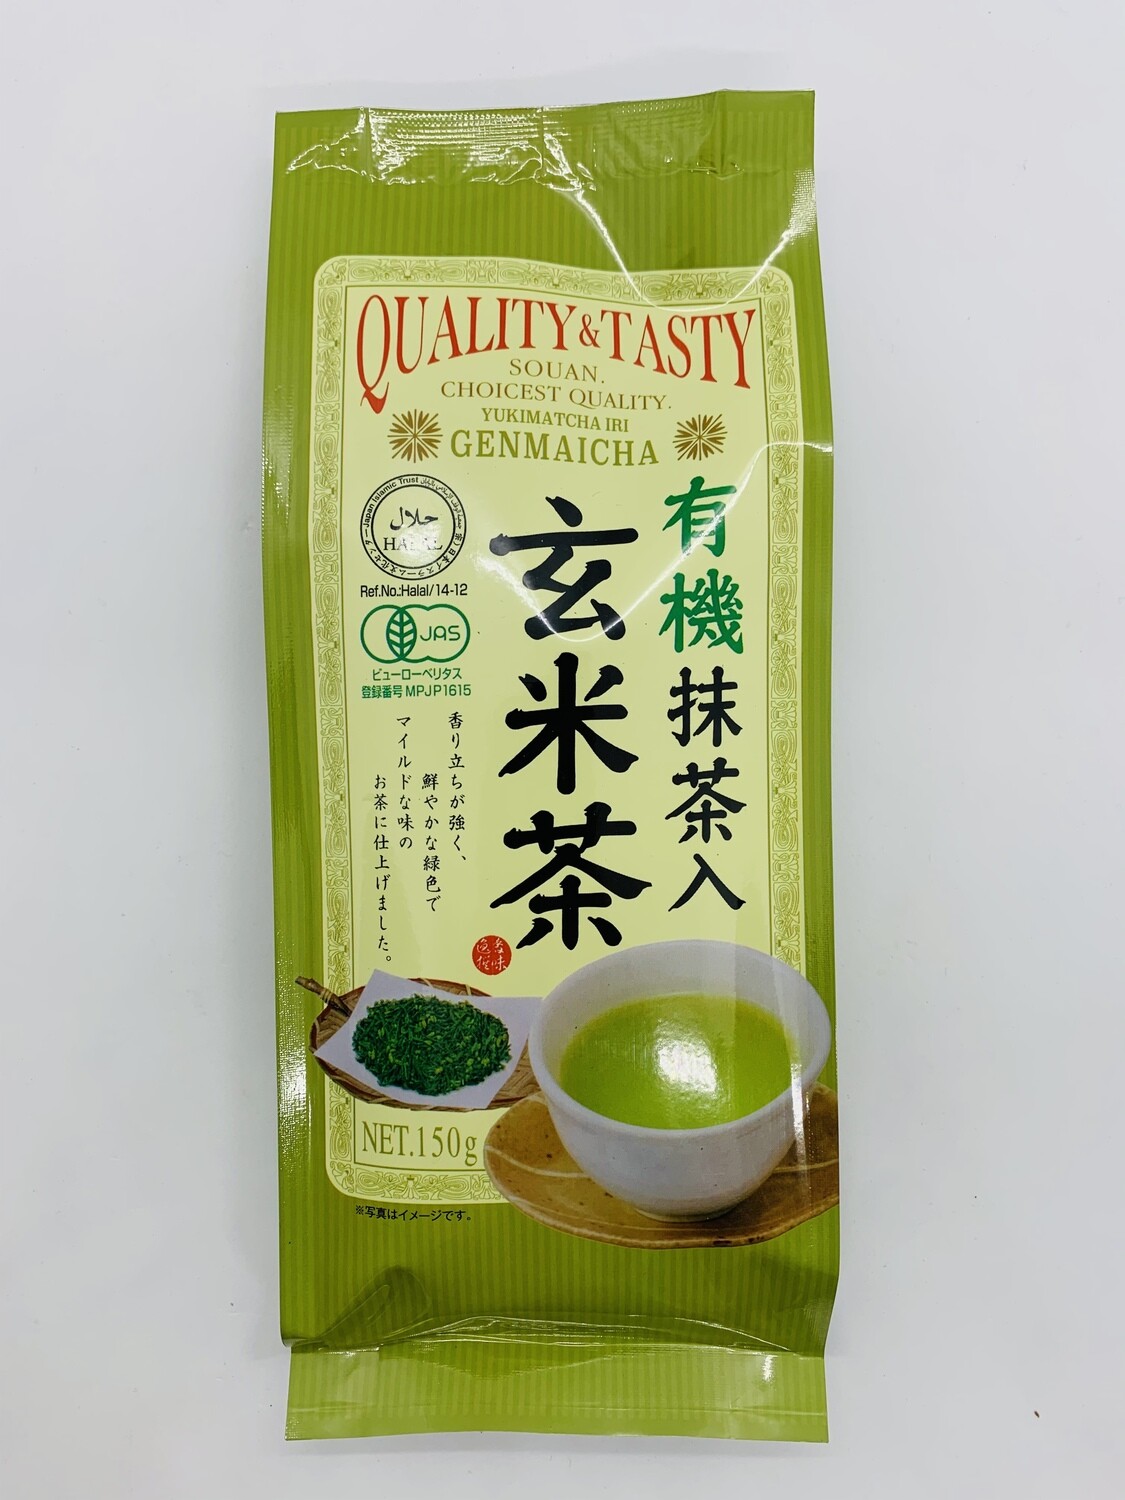 Quality&Tasty Yuki Matcha Genmaicha 150g